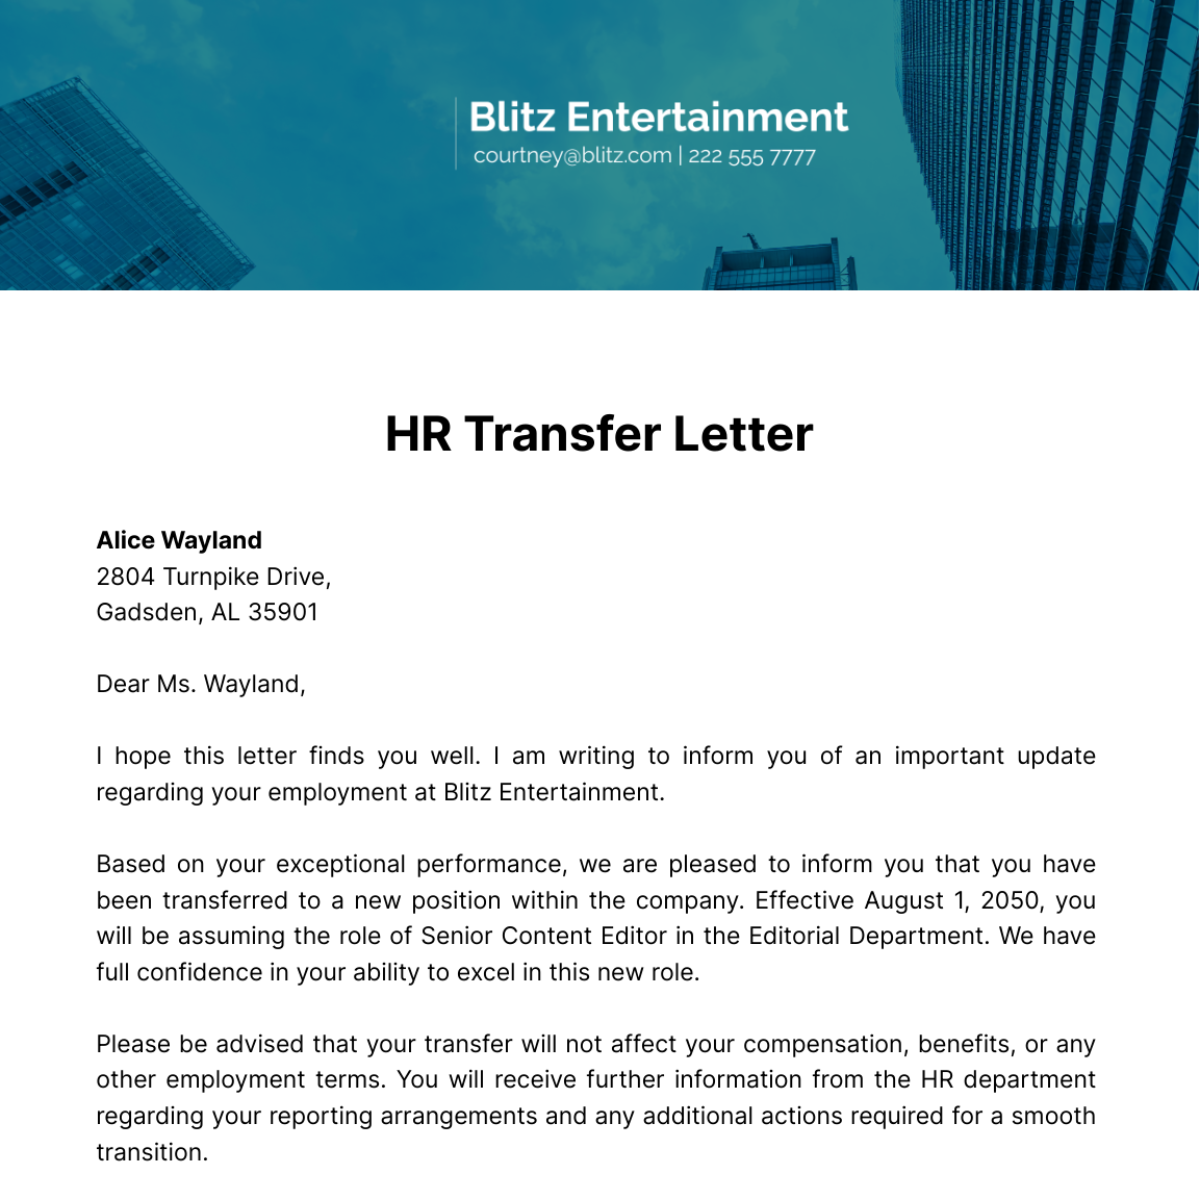 HR Transfer Letter Template